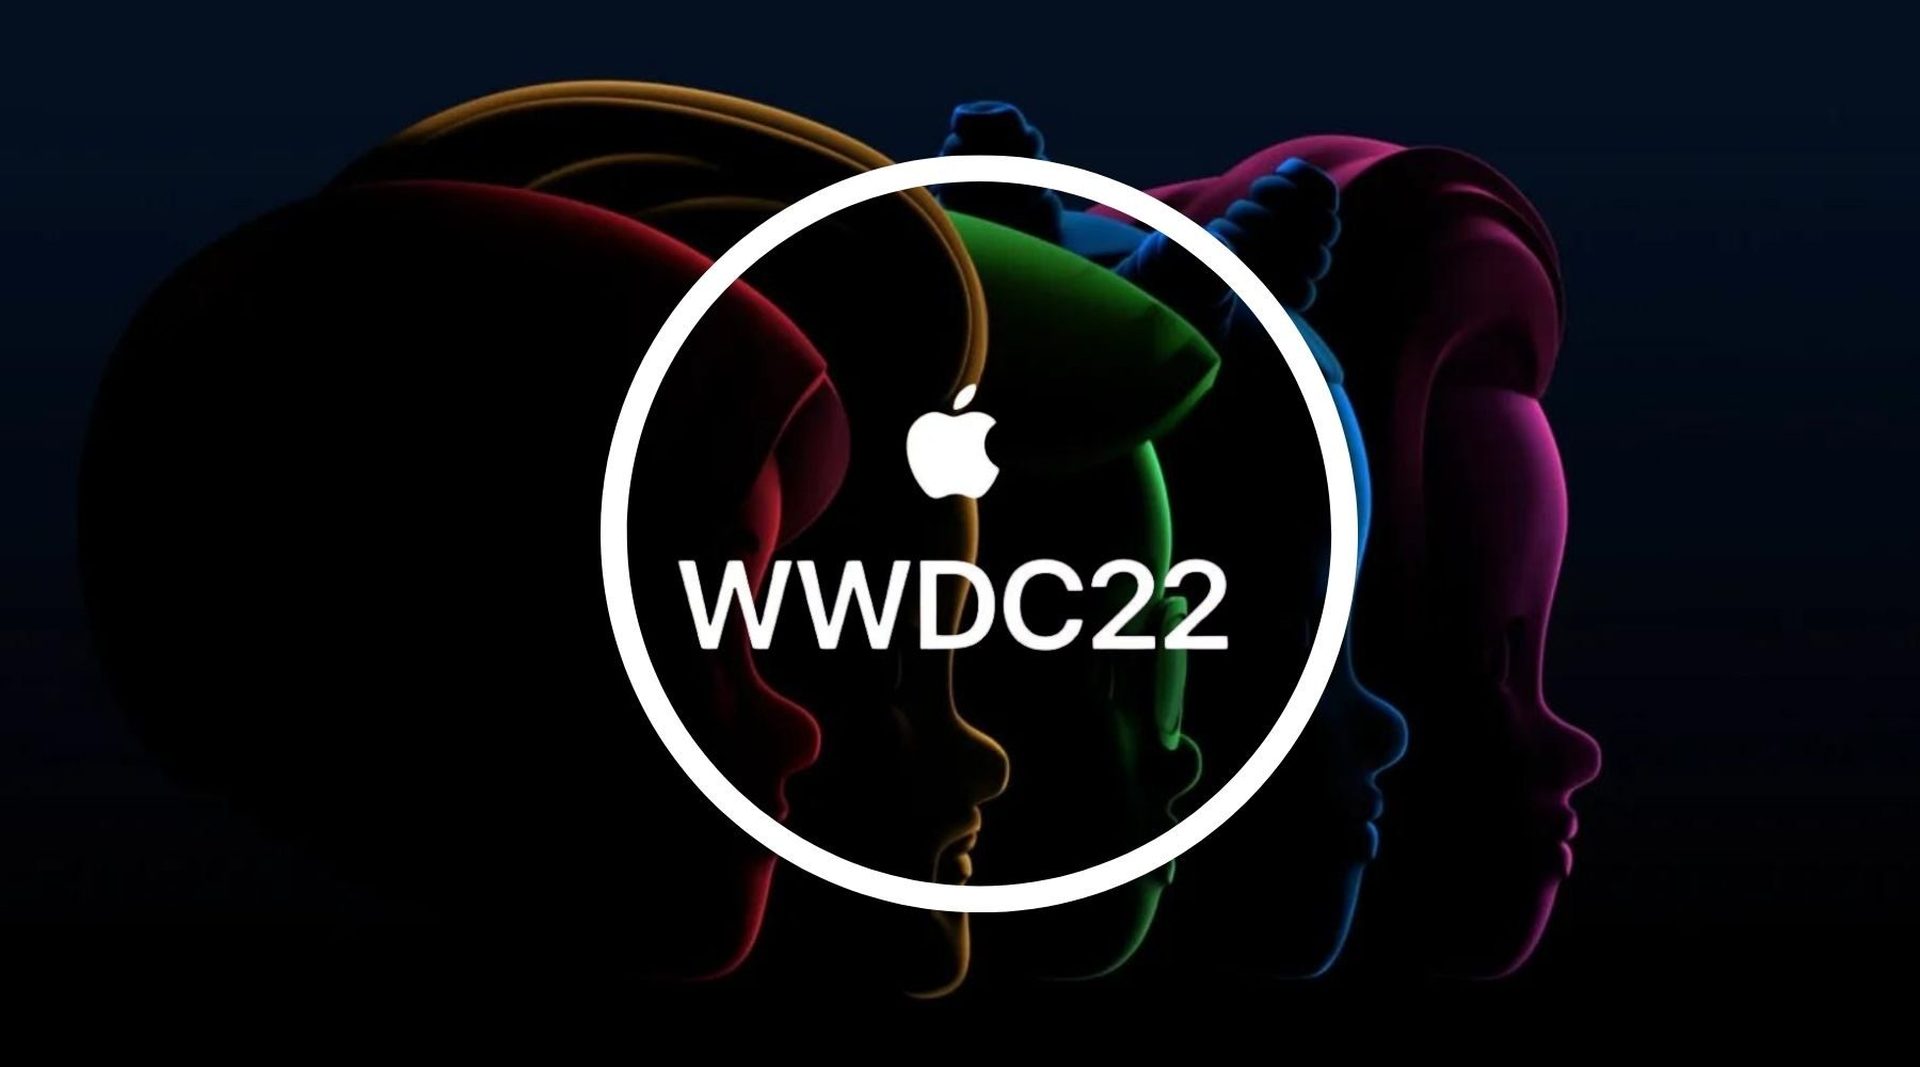 Annunci Apple WWDC 2022: paga dopo, macOS Ventura, chip M2 e altro